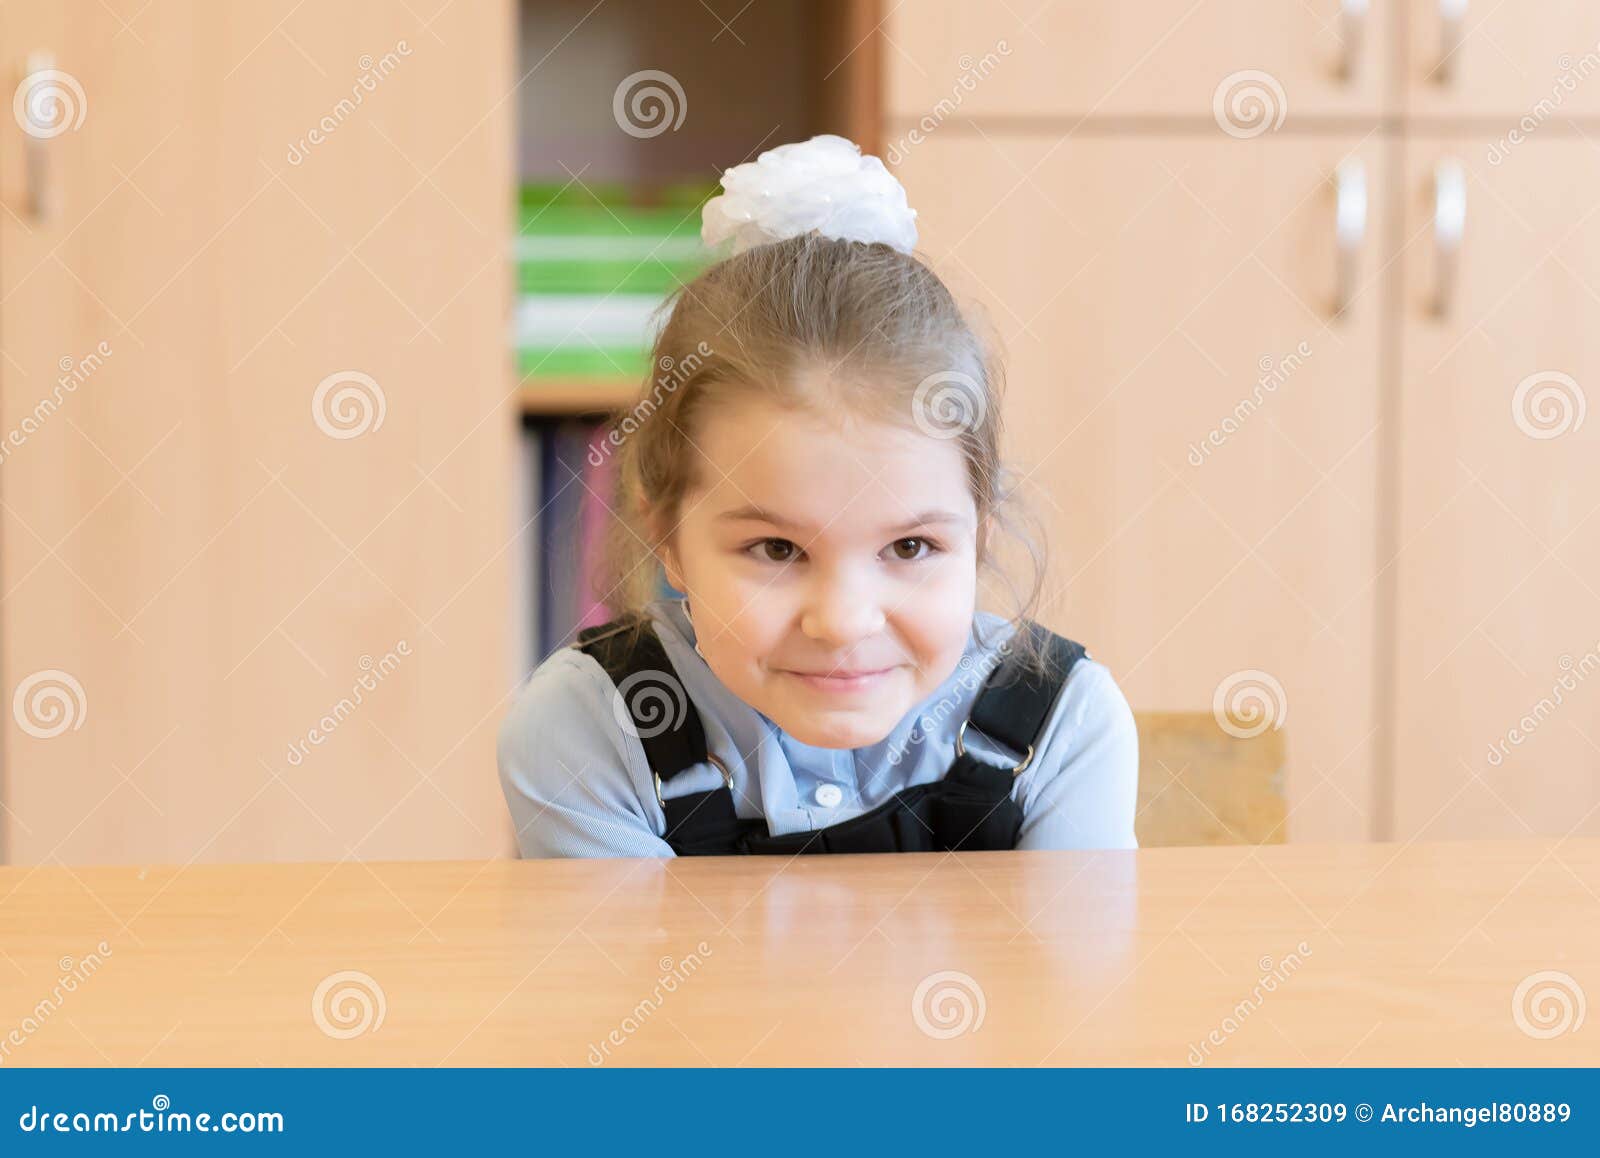 Girl Schoolgirl Is Trying To Hide Under The Desk Stock Image